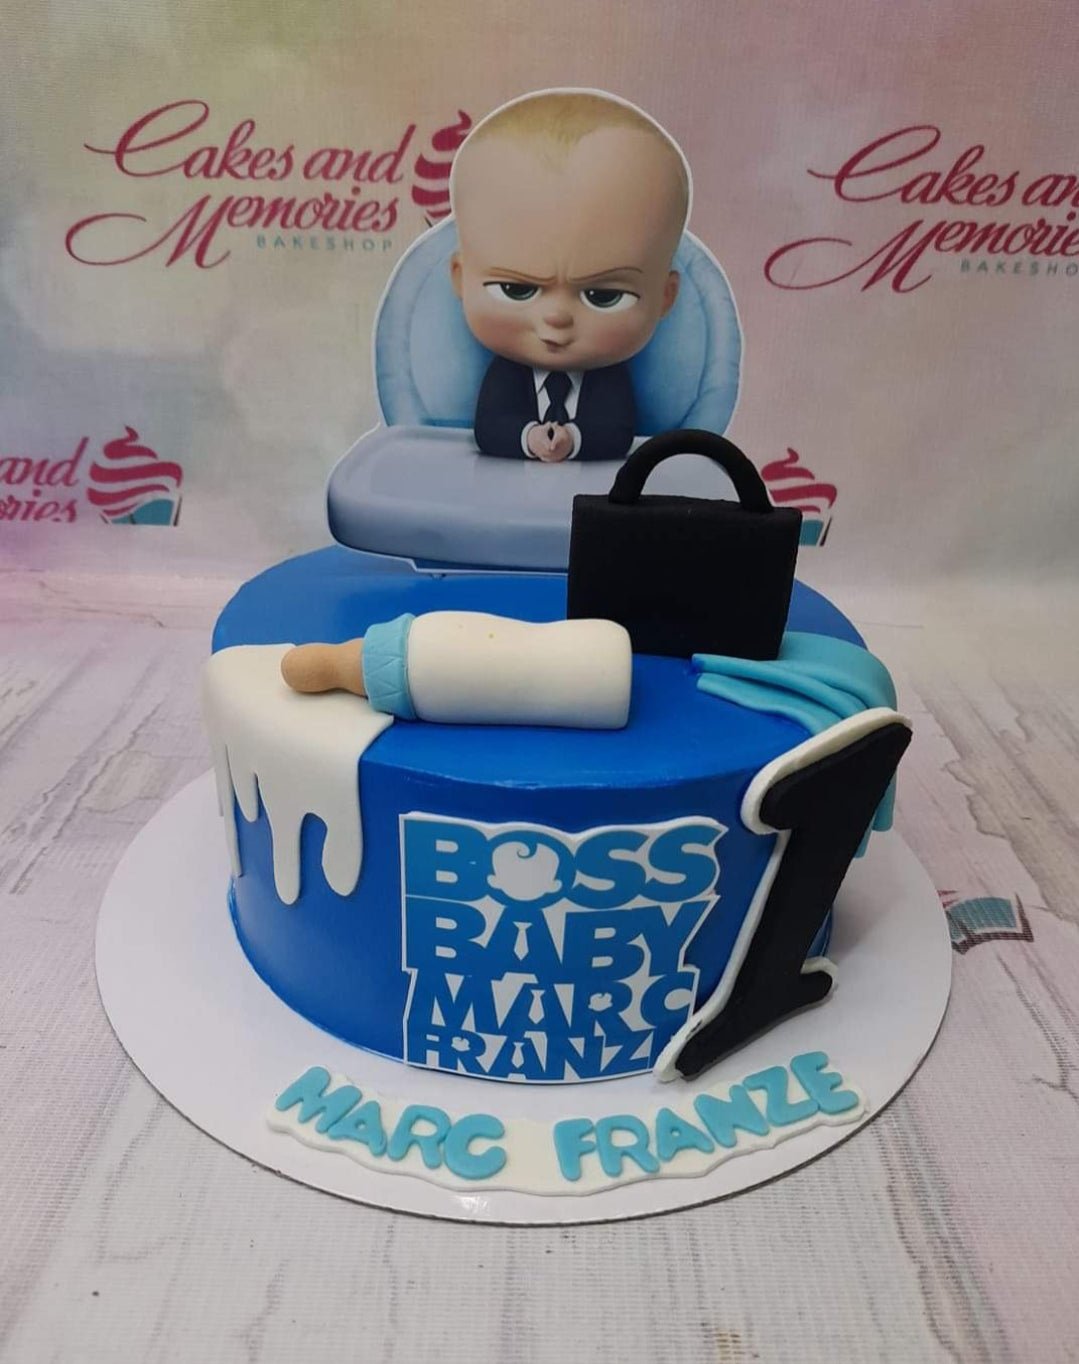 Boss Baby Cake - Dough and Cream